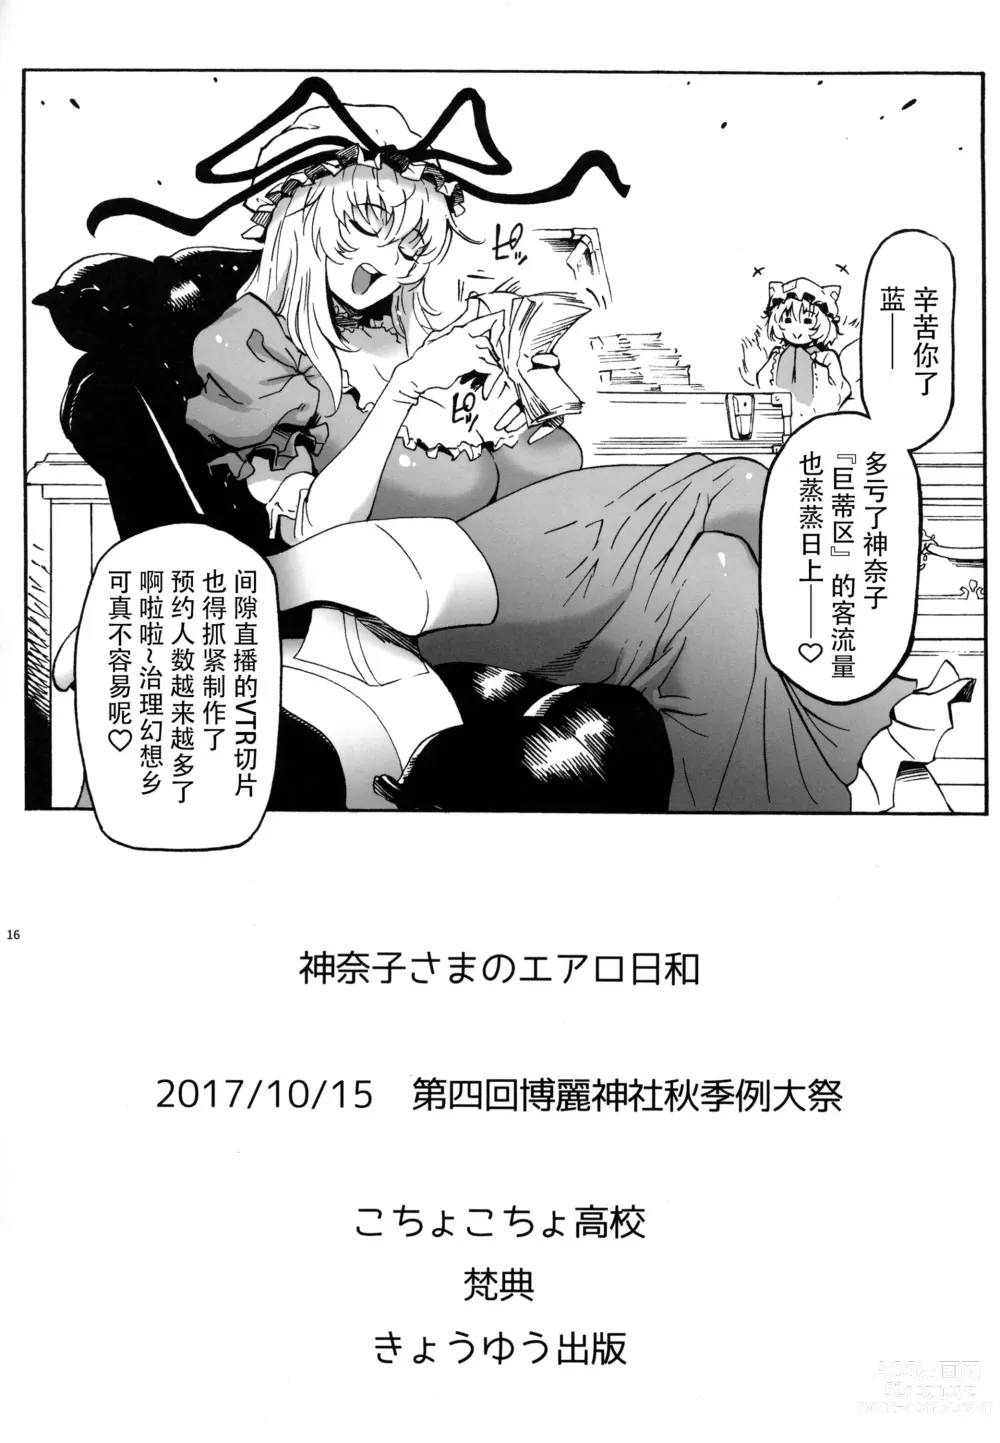 Page 18 of doujinshi Kanako-sama no Aerobiyori